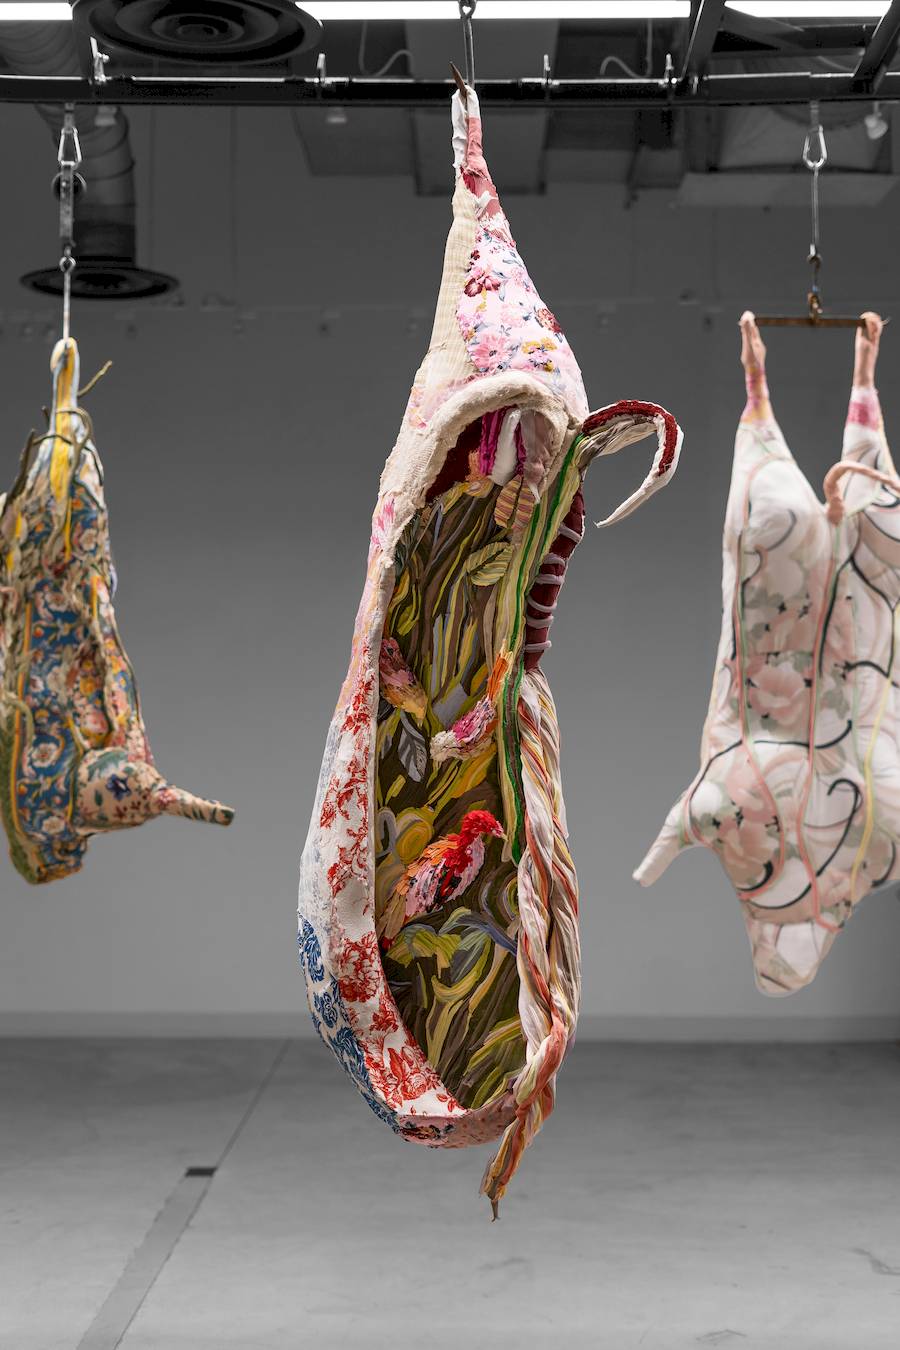 Tamara Kostianovsky é uma artista argentina-americana conhecida por sua abordagem do ambiente, da violência e da cultura do consumo. E ela manifesta a sua visão artística por meio de um meio único: roupas descartadas.